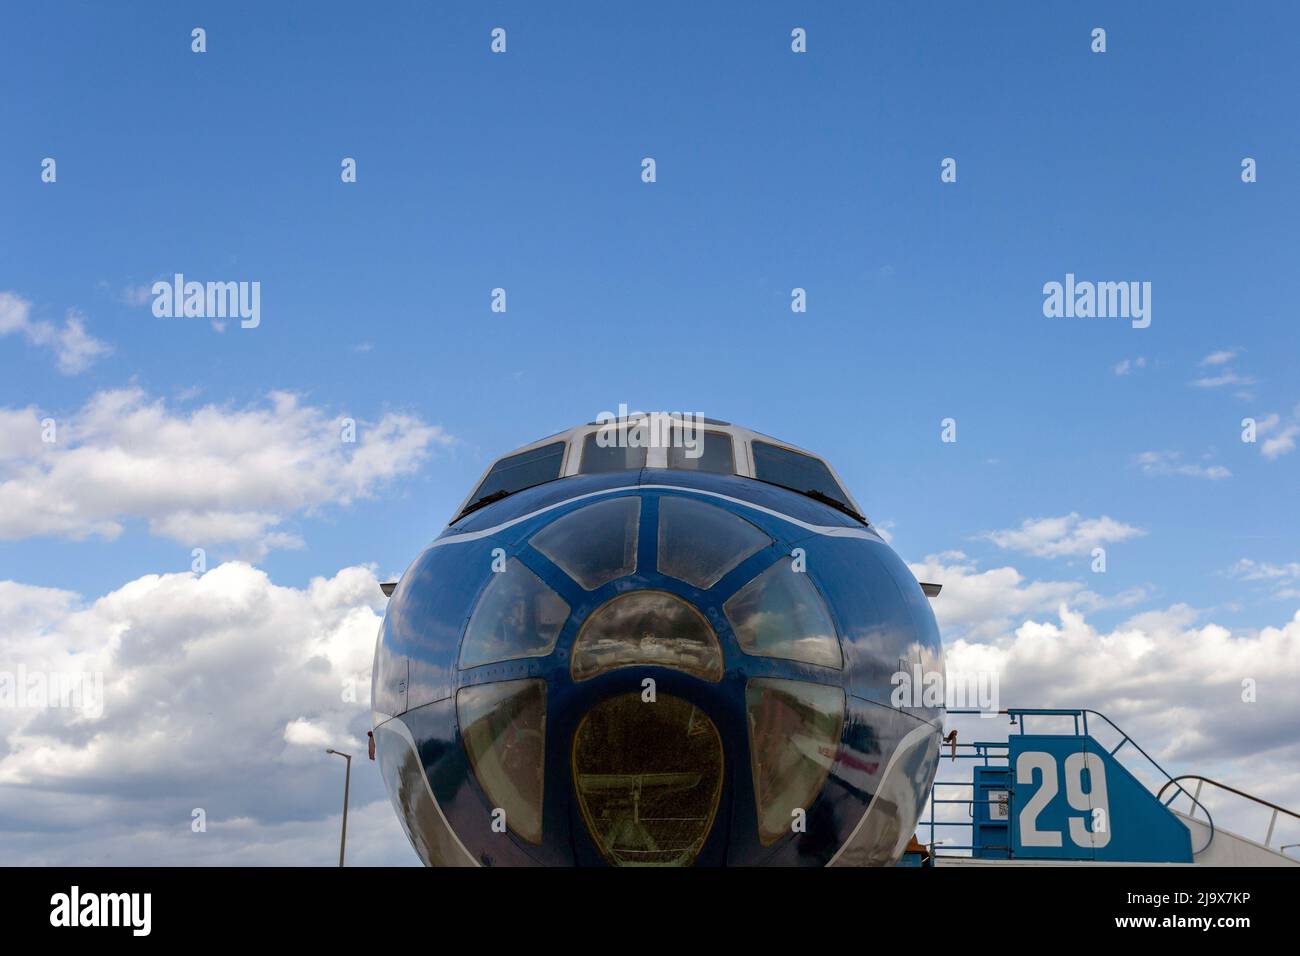 Budapest, Hungría - 09 02 2021: Tupolev Tu-134 en el Aeroparque Un museo de aviación al aire libre en Budapest. Foto de stock